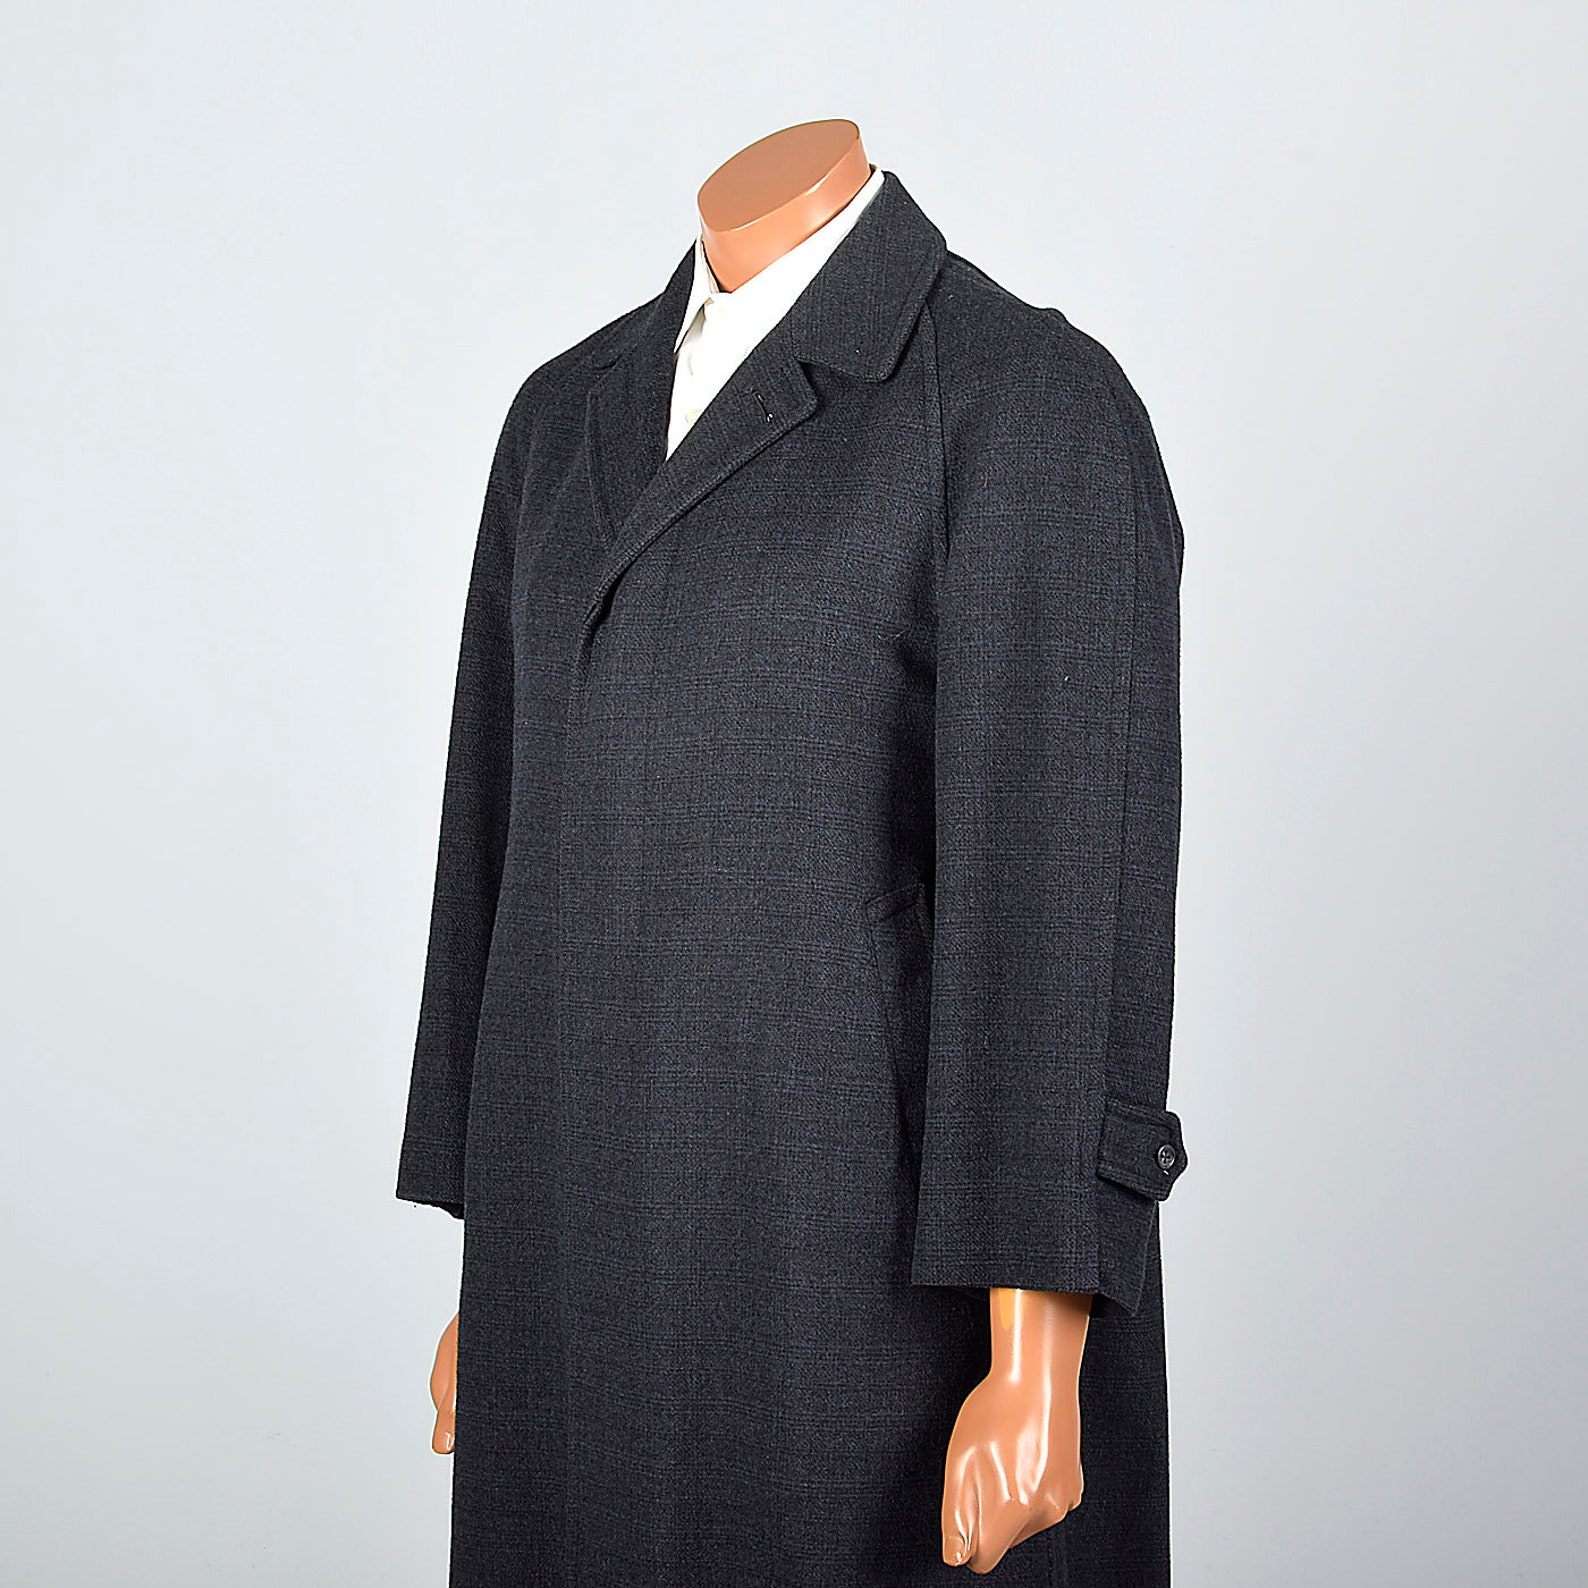 39R 1950s Mens Coat Wool Winter Coat Overcoat Button Front - Etsy